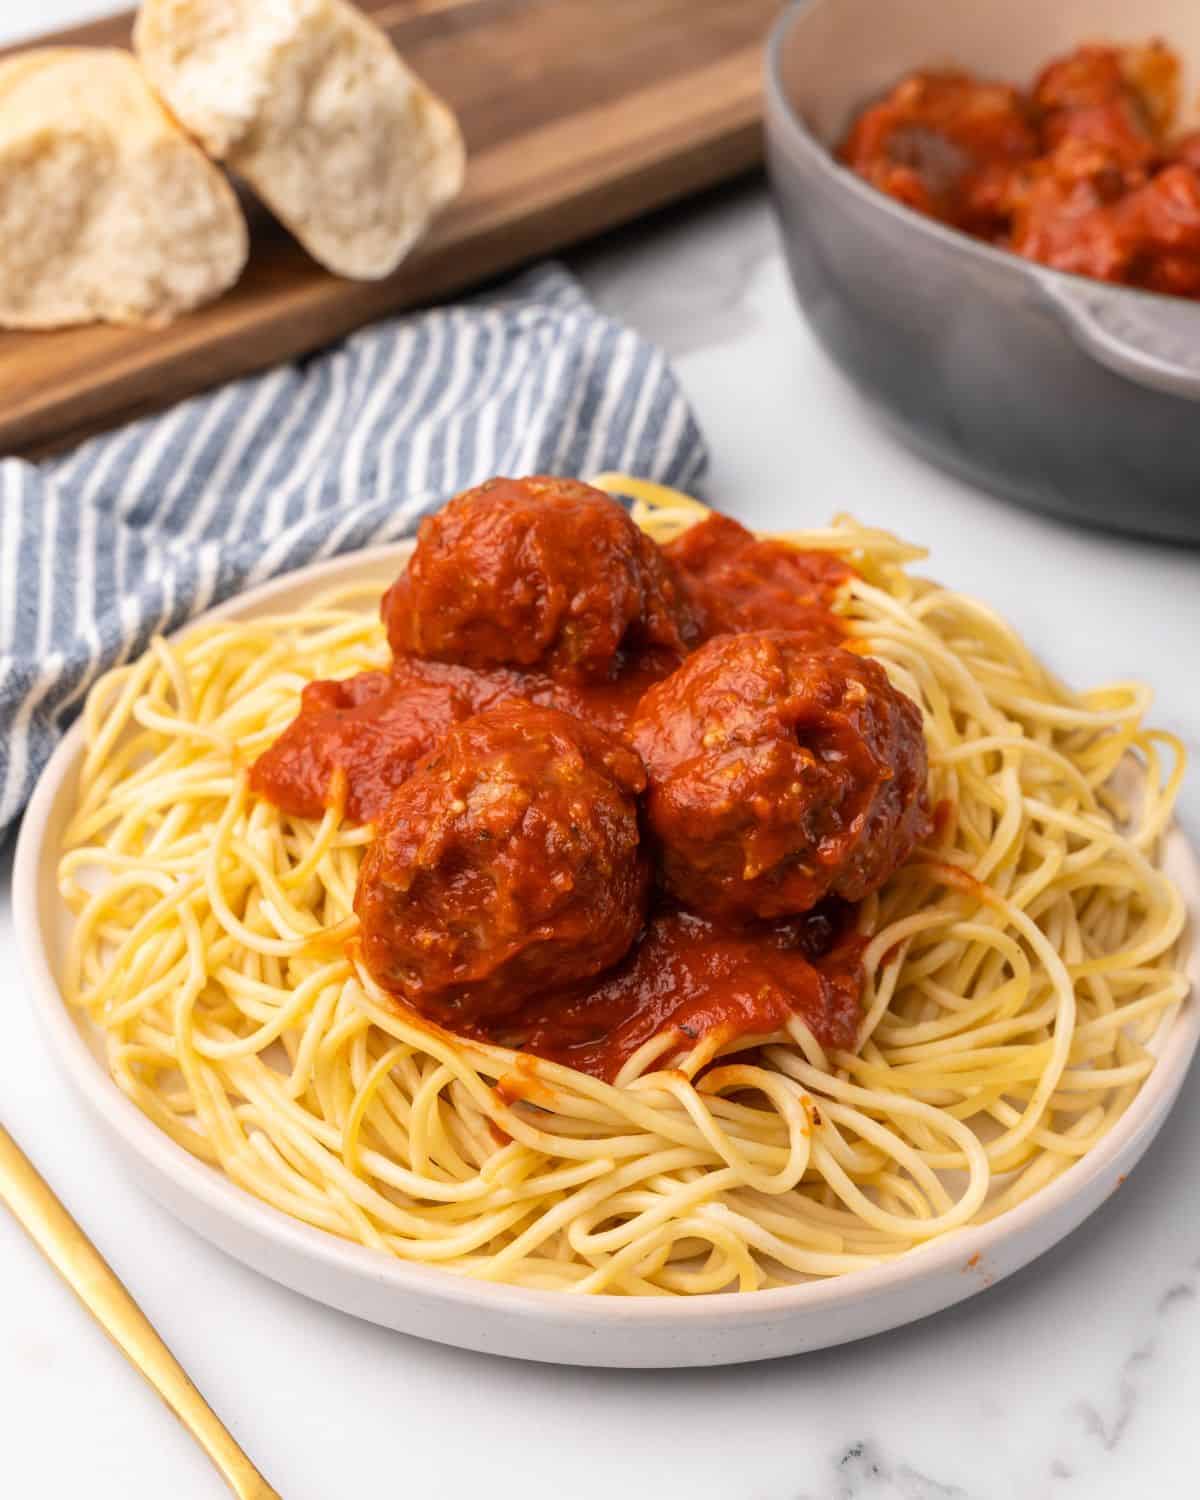 turkey meatballs in sauce on pasta on a plate.